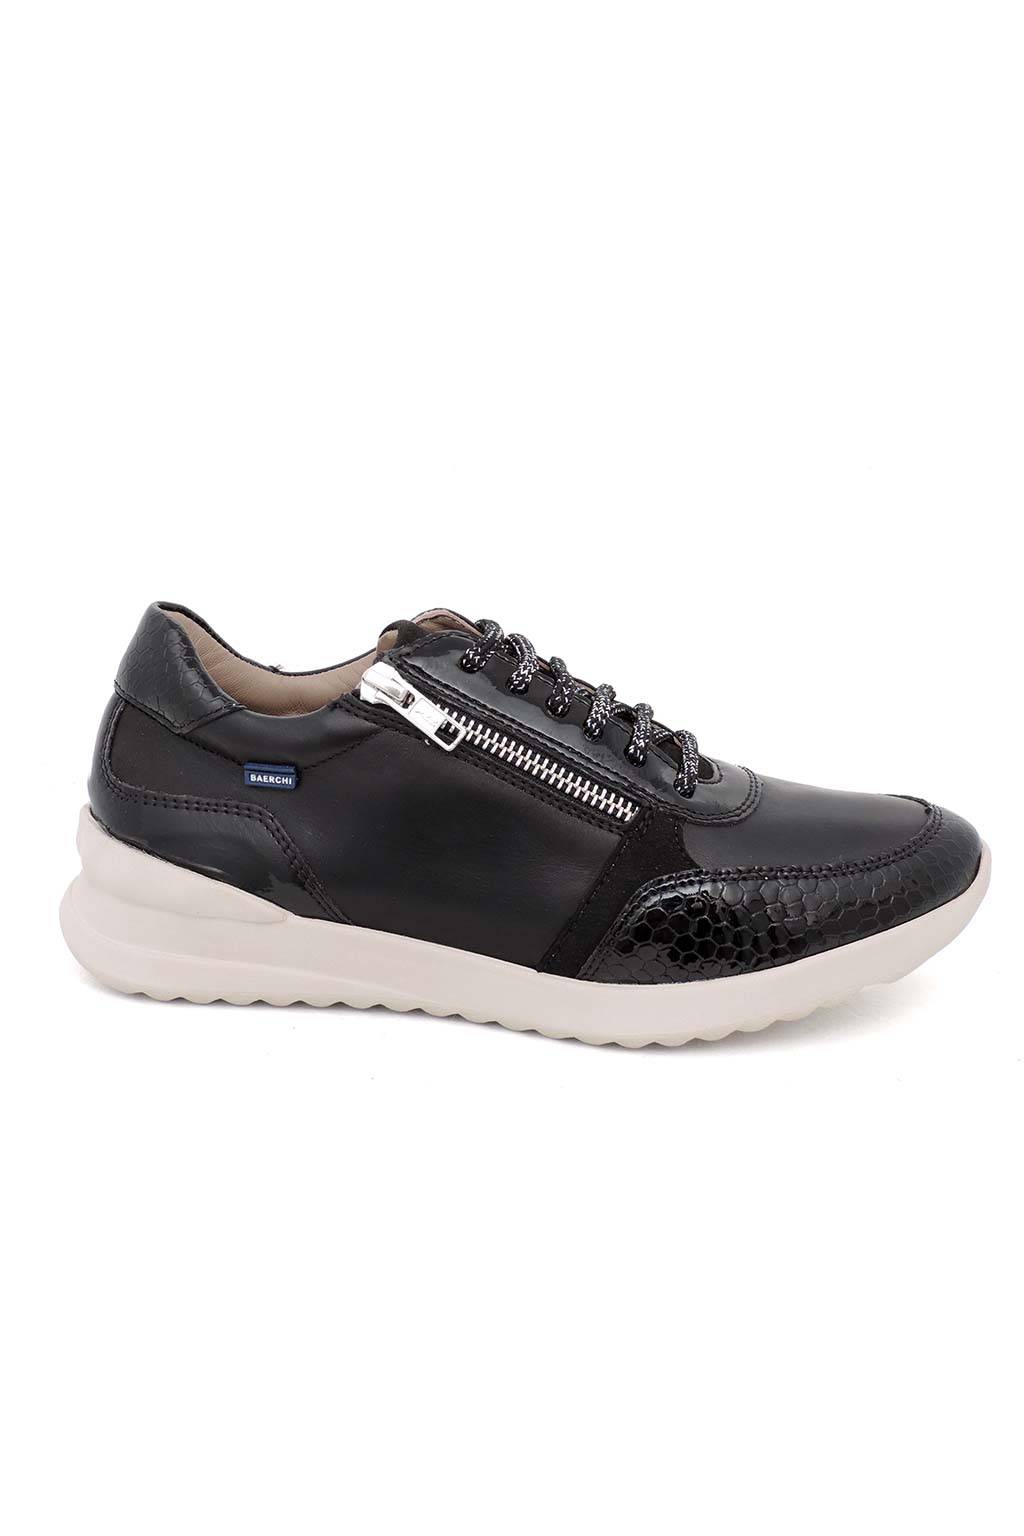 Leather shoes Baerchi 55151 - medinapiel.es